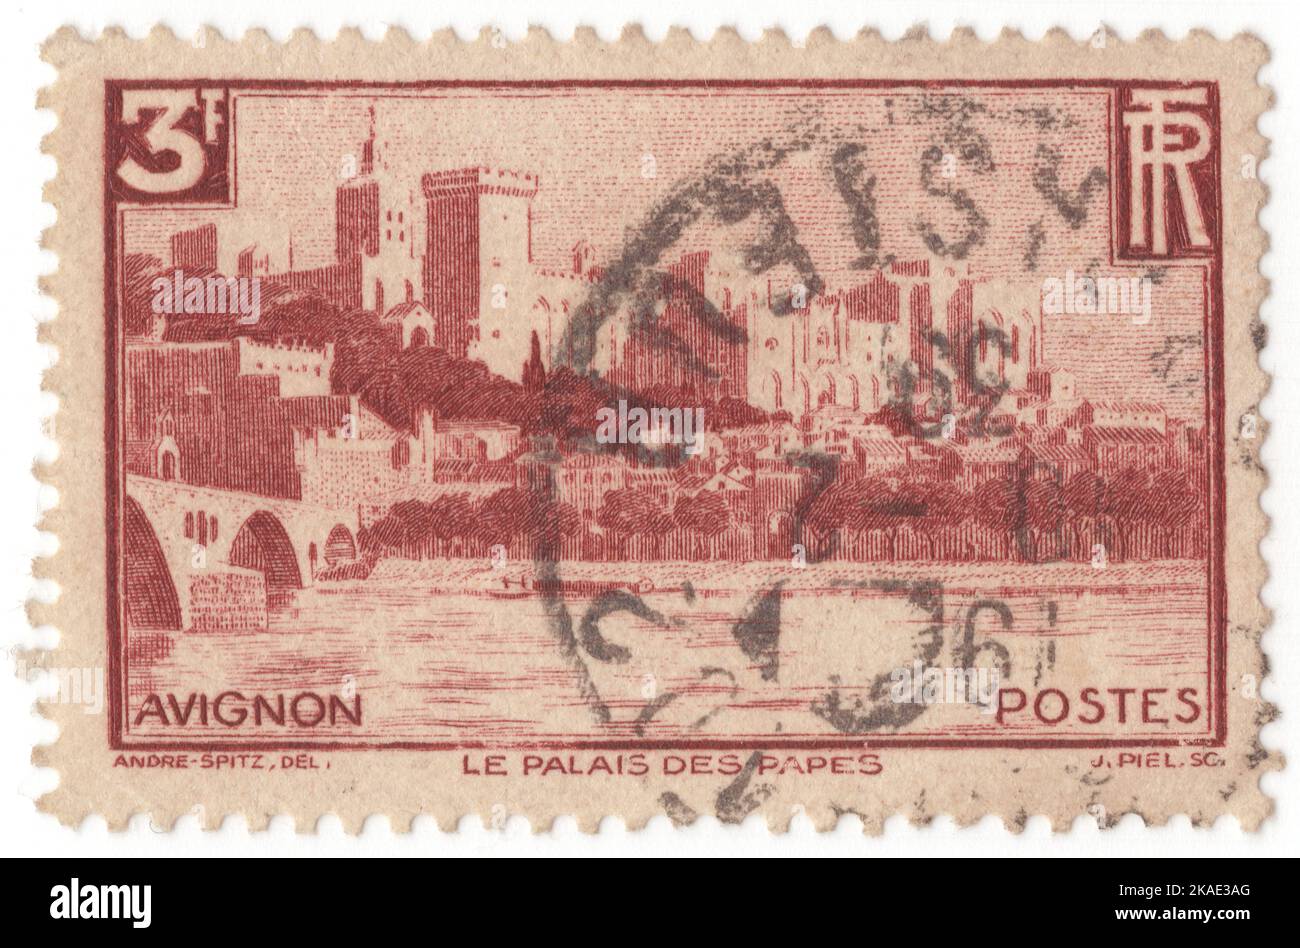 FRANCE - 1938 : un timbre-poste brun carmin de 3 francs représentant le panorama sur le Palais des Papes, est un palais historique situé à Avignon, dans le sud de la France. C'est l'un des plus grands et des plus importants bâtiments gothiques médiévaux d'Europe. Autrefois forteresse et palais, la résidence papale fut un siège du christianisme occidental au cours du 14th siècle. Depuis 1995, le Palais des Papes est classé, avec le centre historique d'Avignon, comme site du patrimoine mondial de l'UNESCO, pour son architecture exceptionnelle et son importance historique pour la papauté Banque D'Images